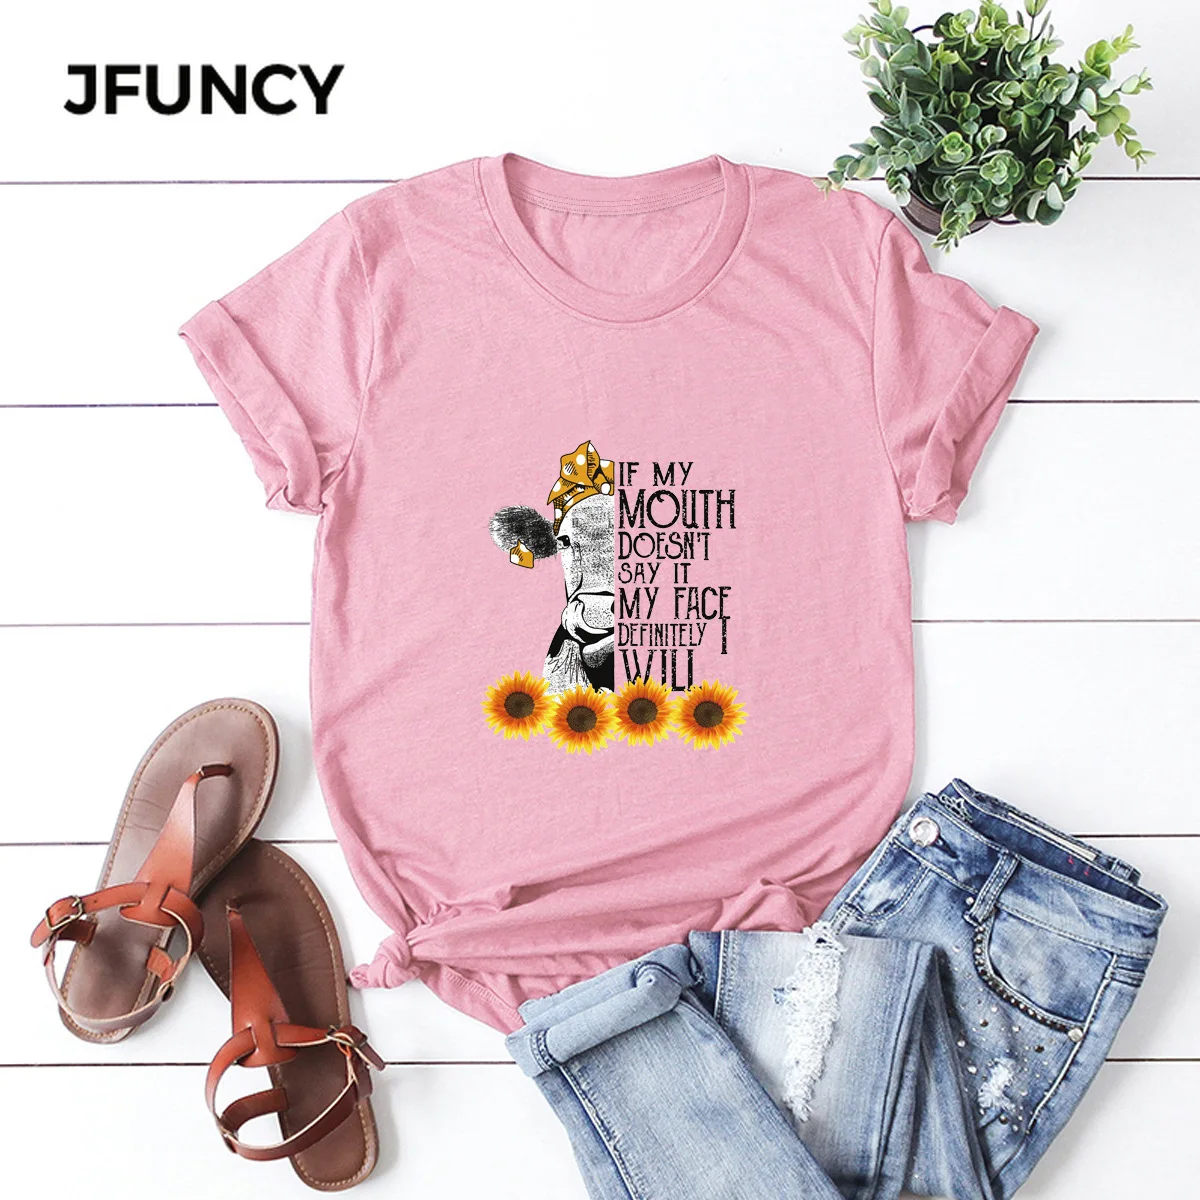 JFUNCY New Print T Shirt Women Summer Shirts 100% Cotton Short Sleeve Woman T-shirt Oversize Casual Female Tees Tops